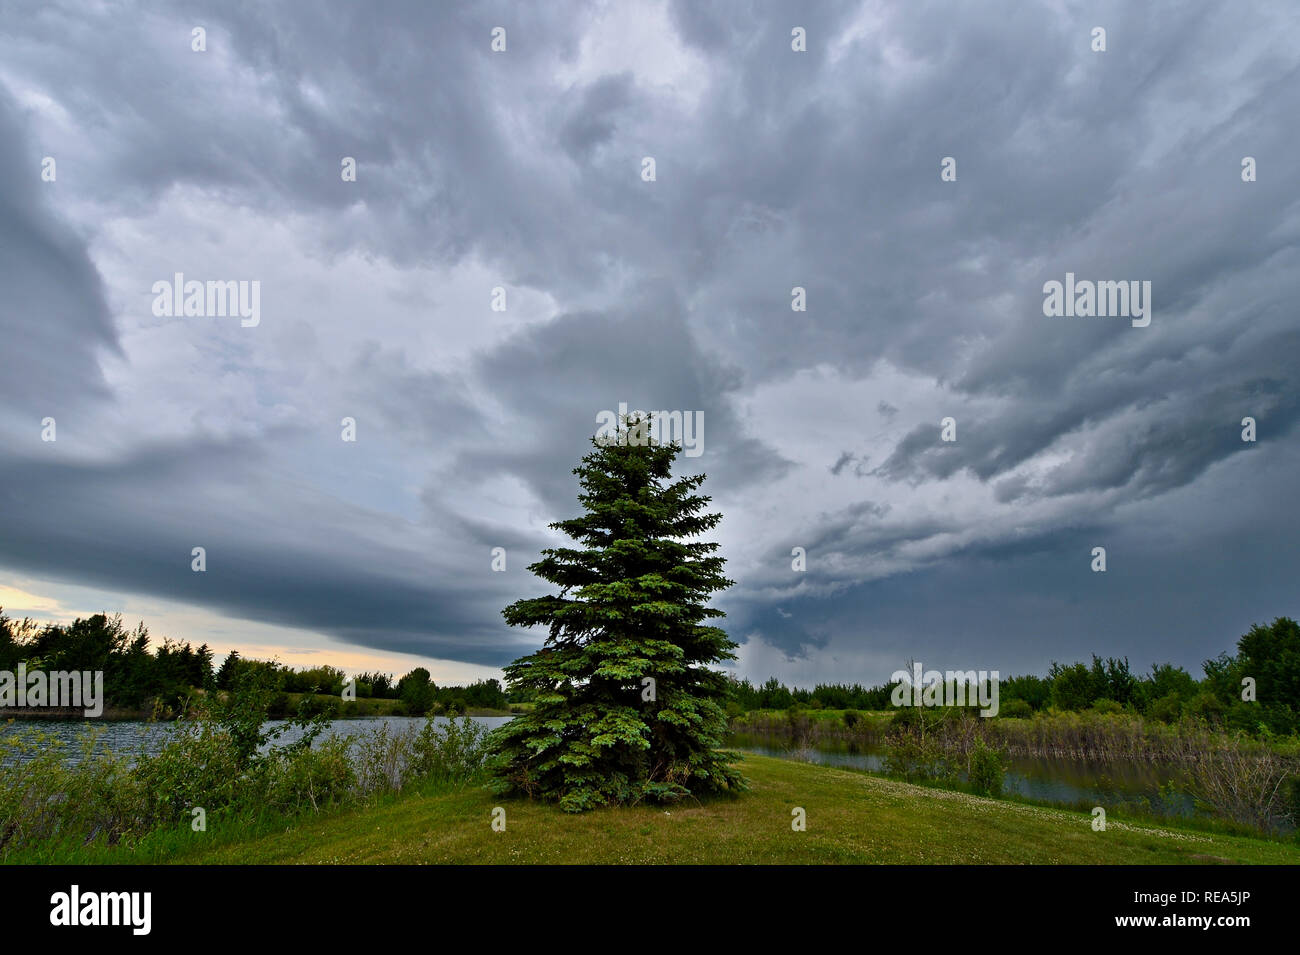 Einen breiten Betrachtungswinkel horizontal Bild der Sturmwolken über einen natürlichen Teich und Grünfläche in ländlichen Alberta Kanada bewegen. Stockfoto